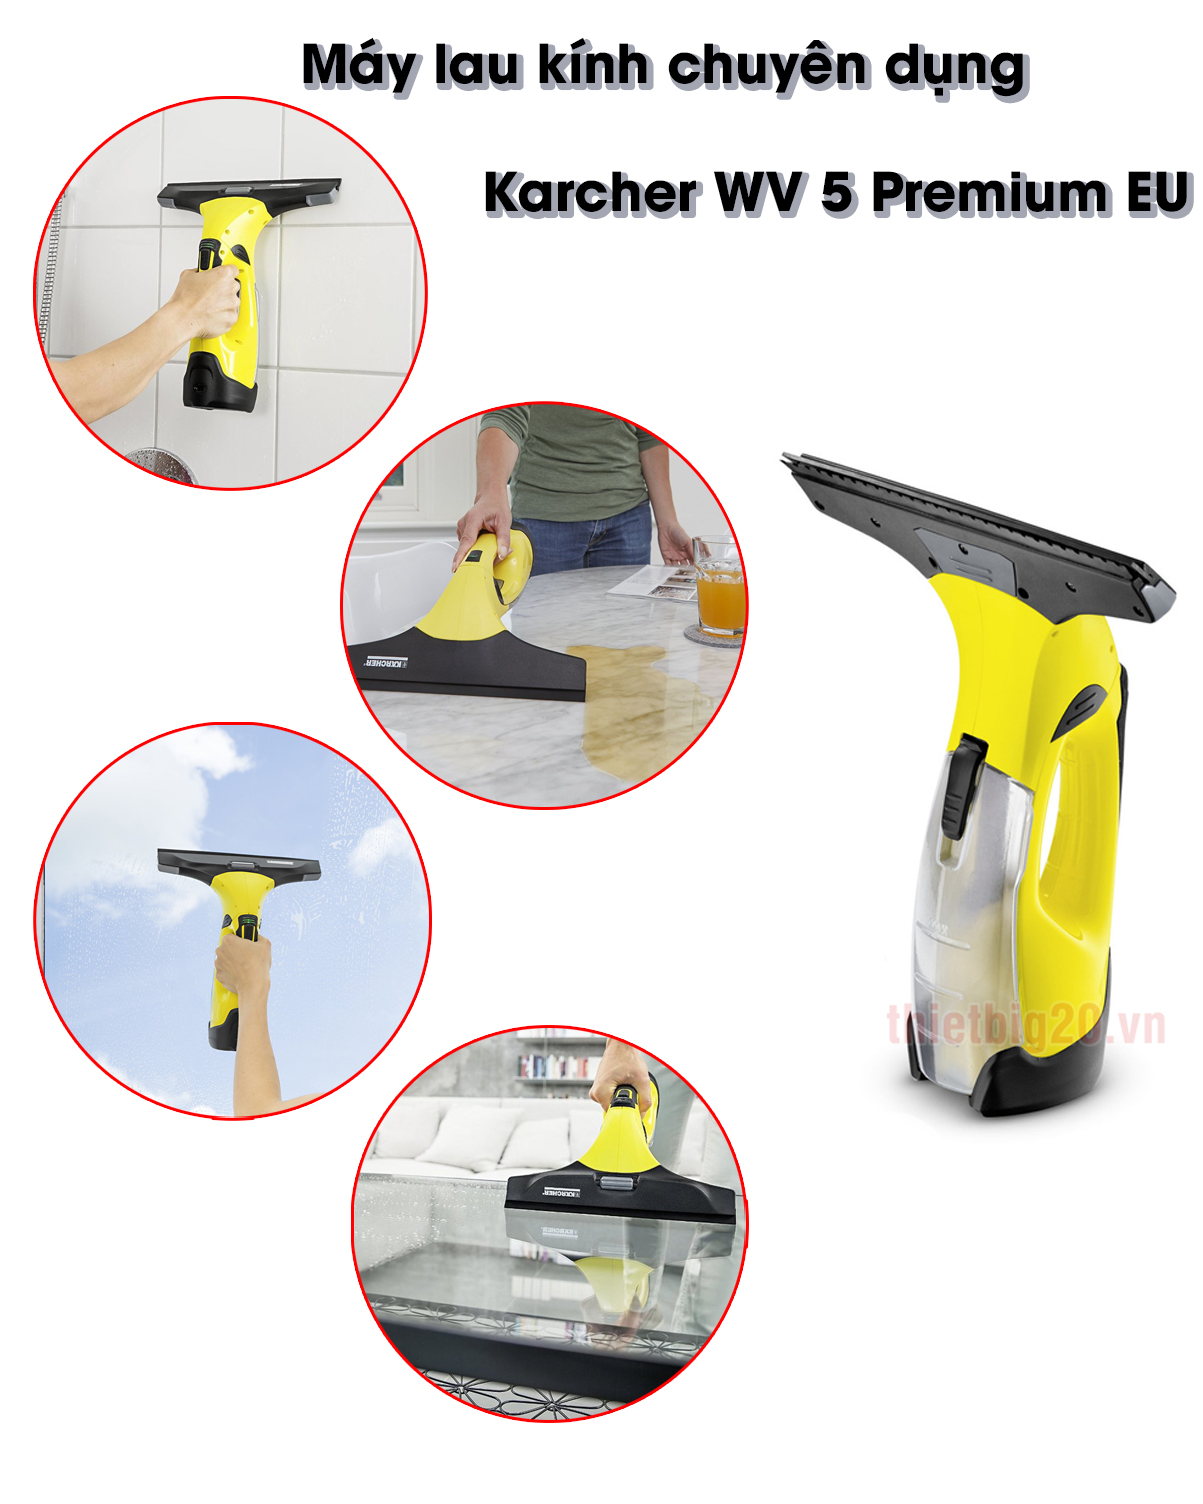 Máy lau kính chuyên dụng Karcher WV 5 Premium EU